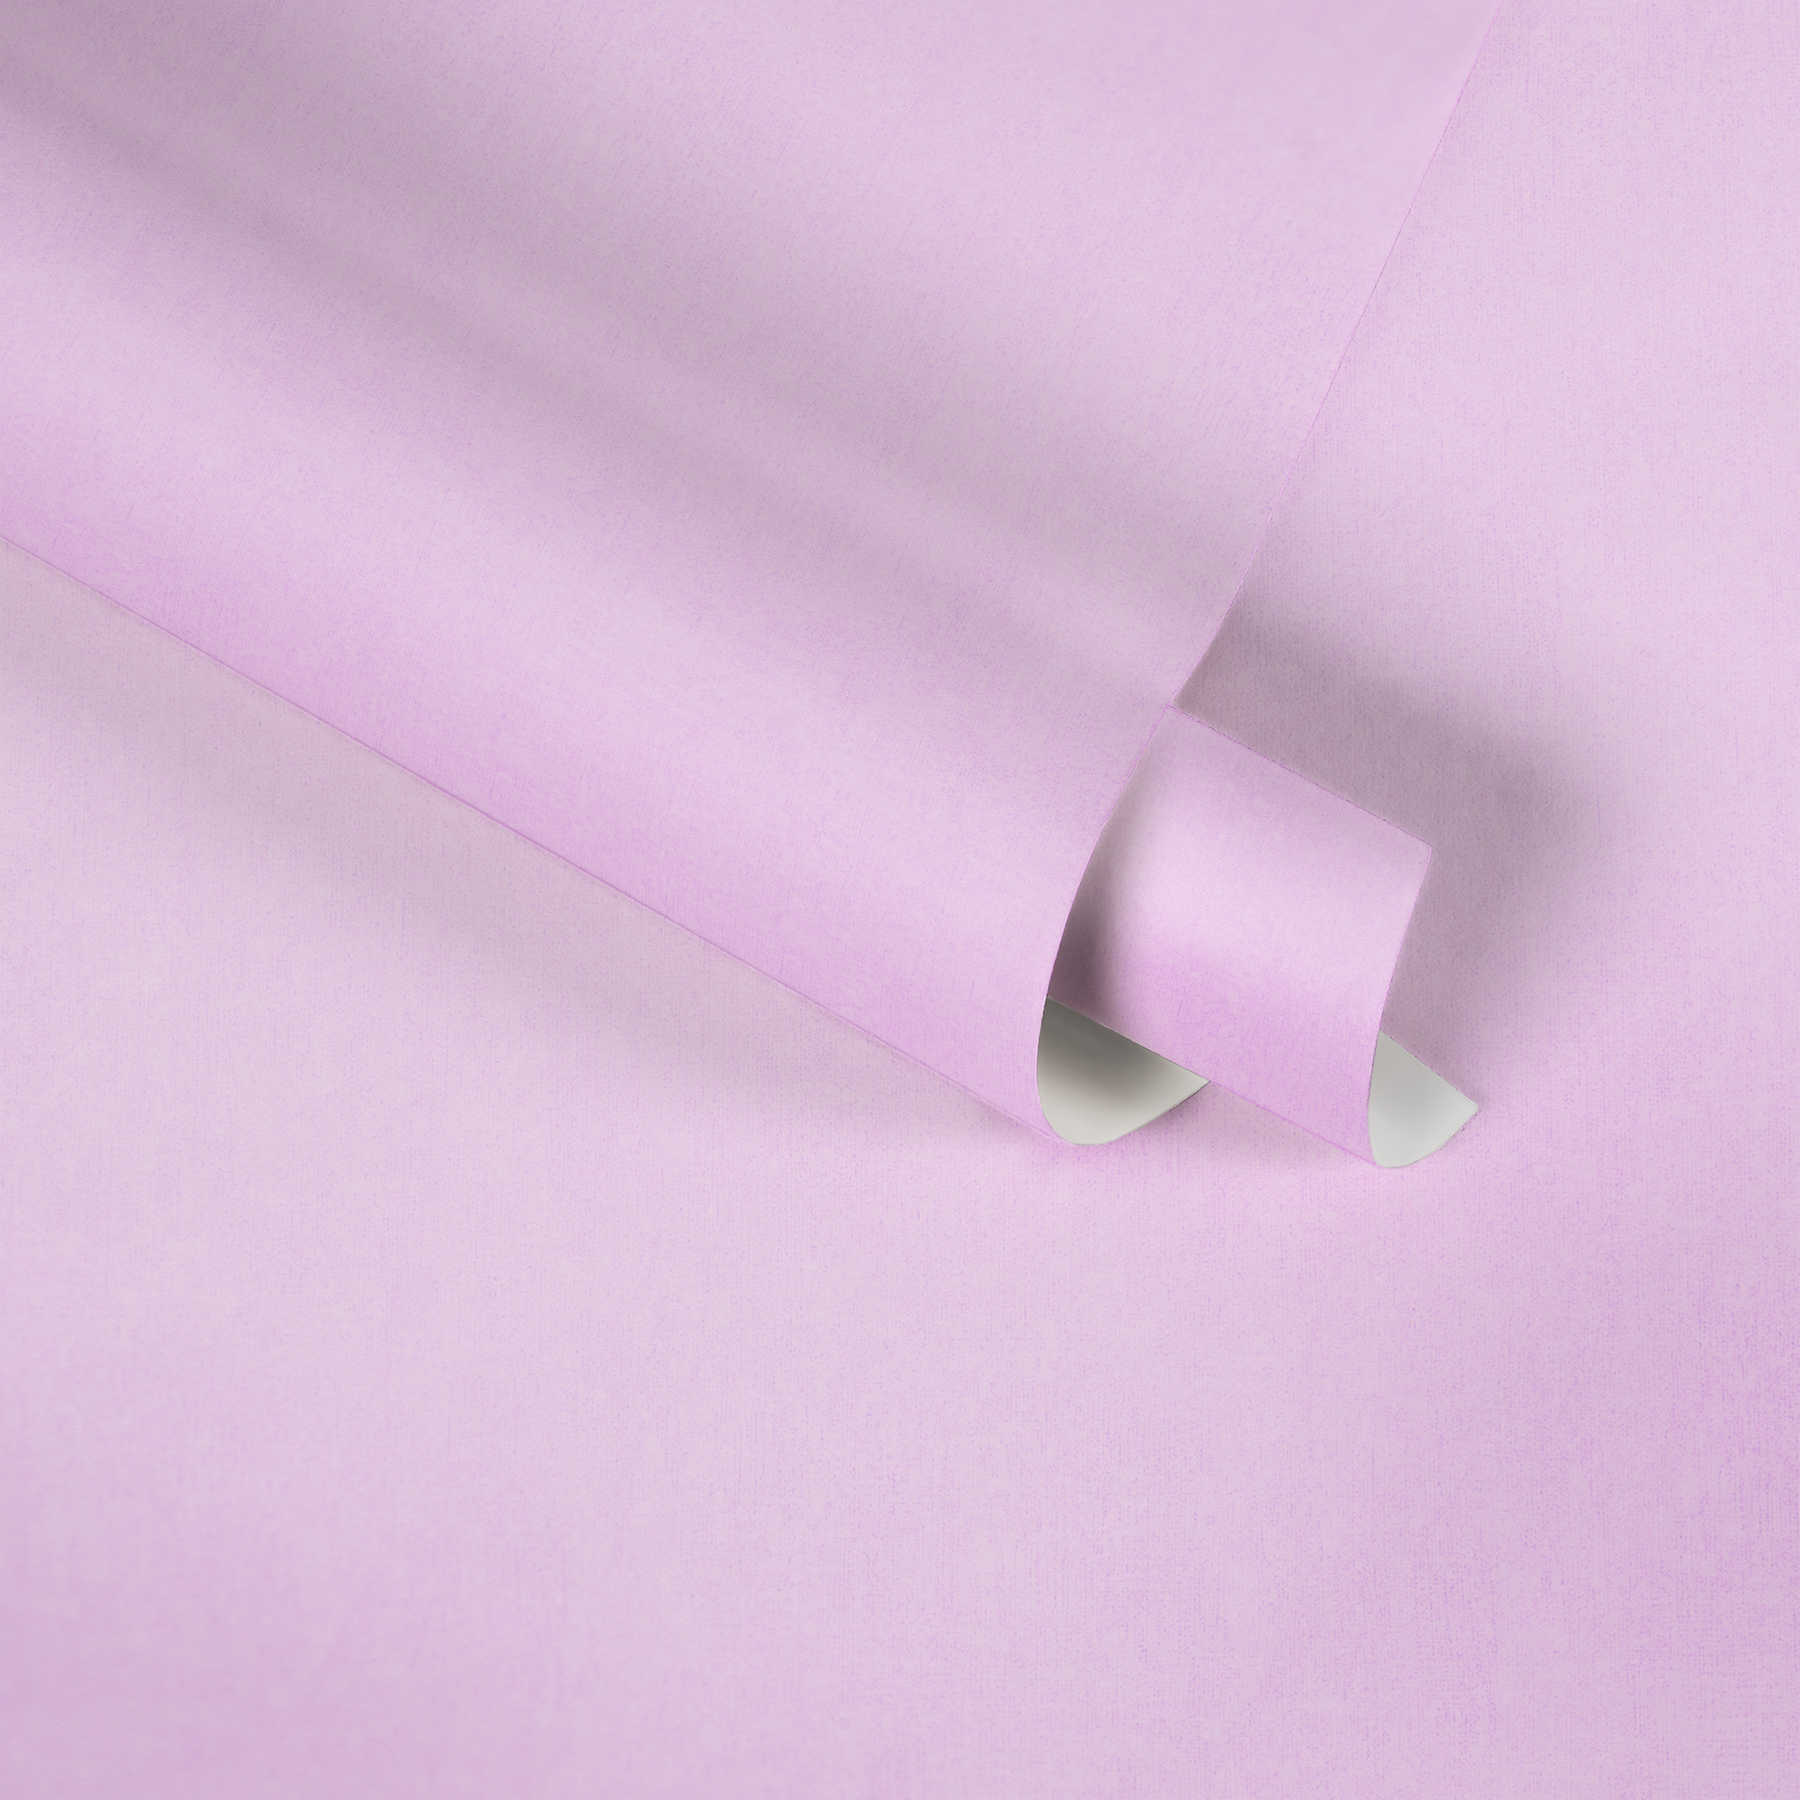             Roze vliesbehang effen, pastel voor kinderkamer - Roze
        